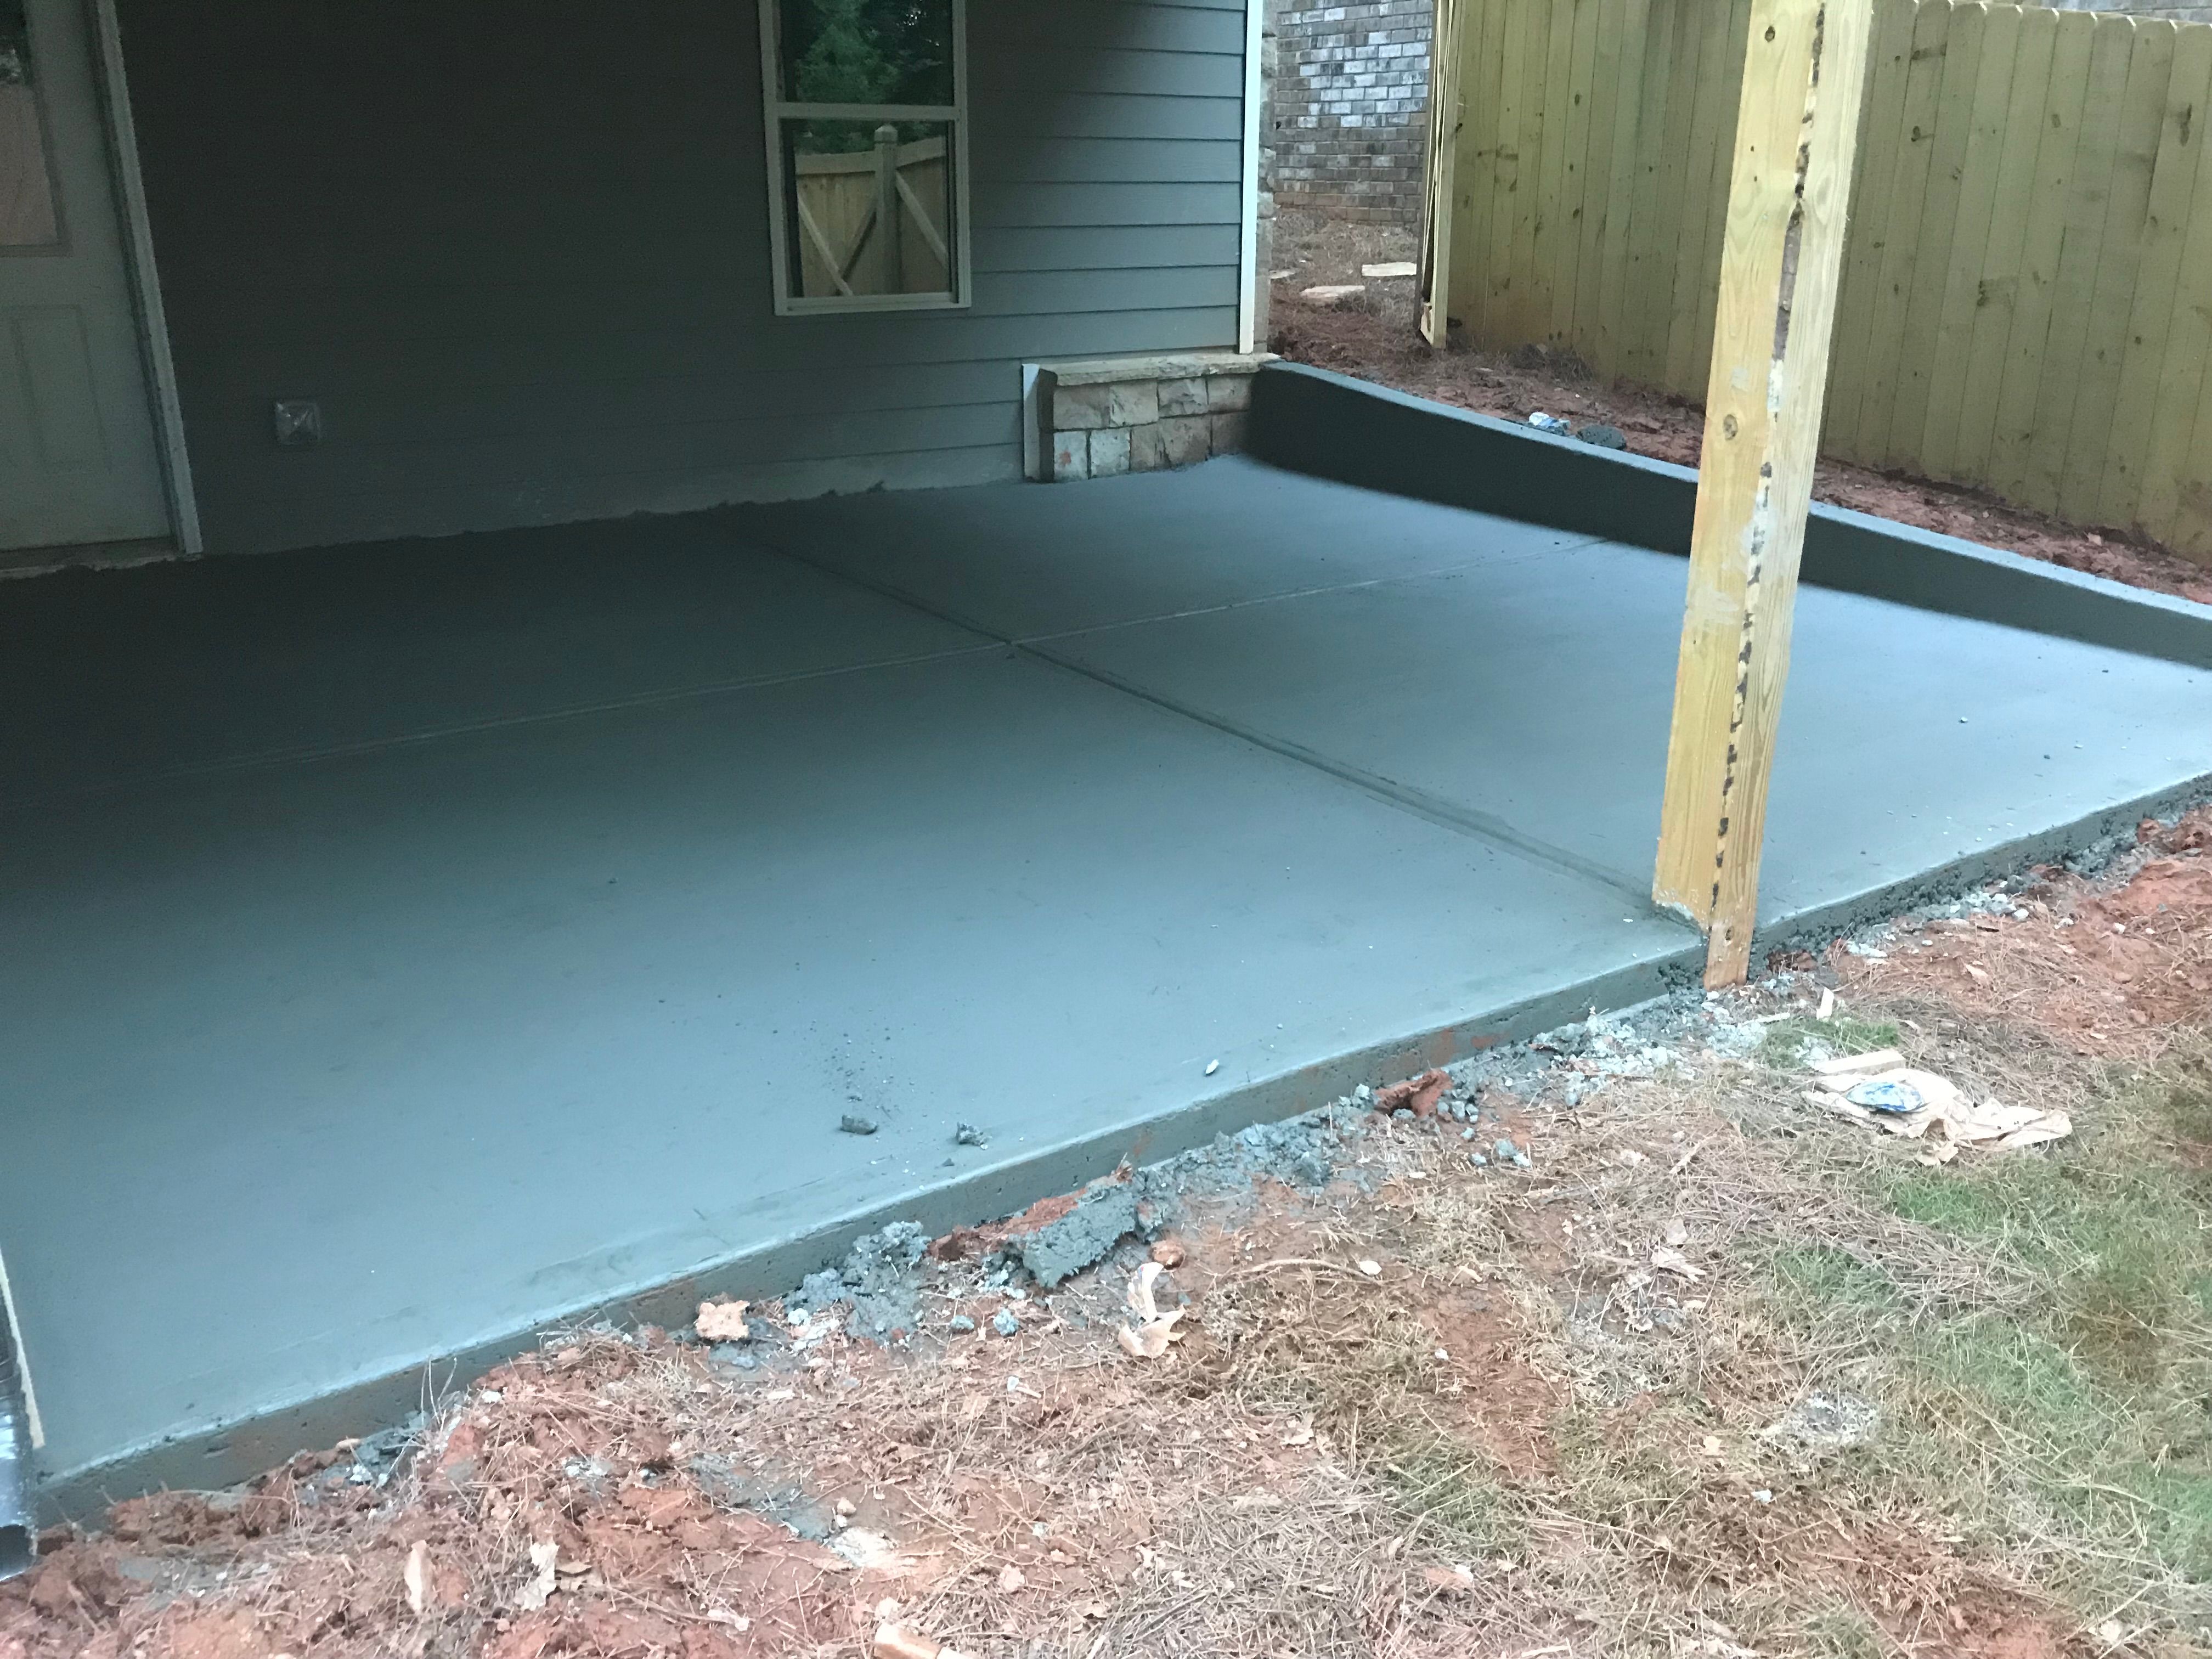 Concrete for Compadres Concrete in Griffin, GA